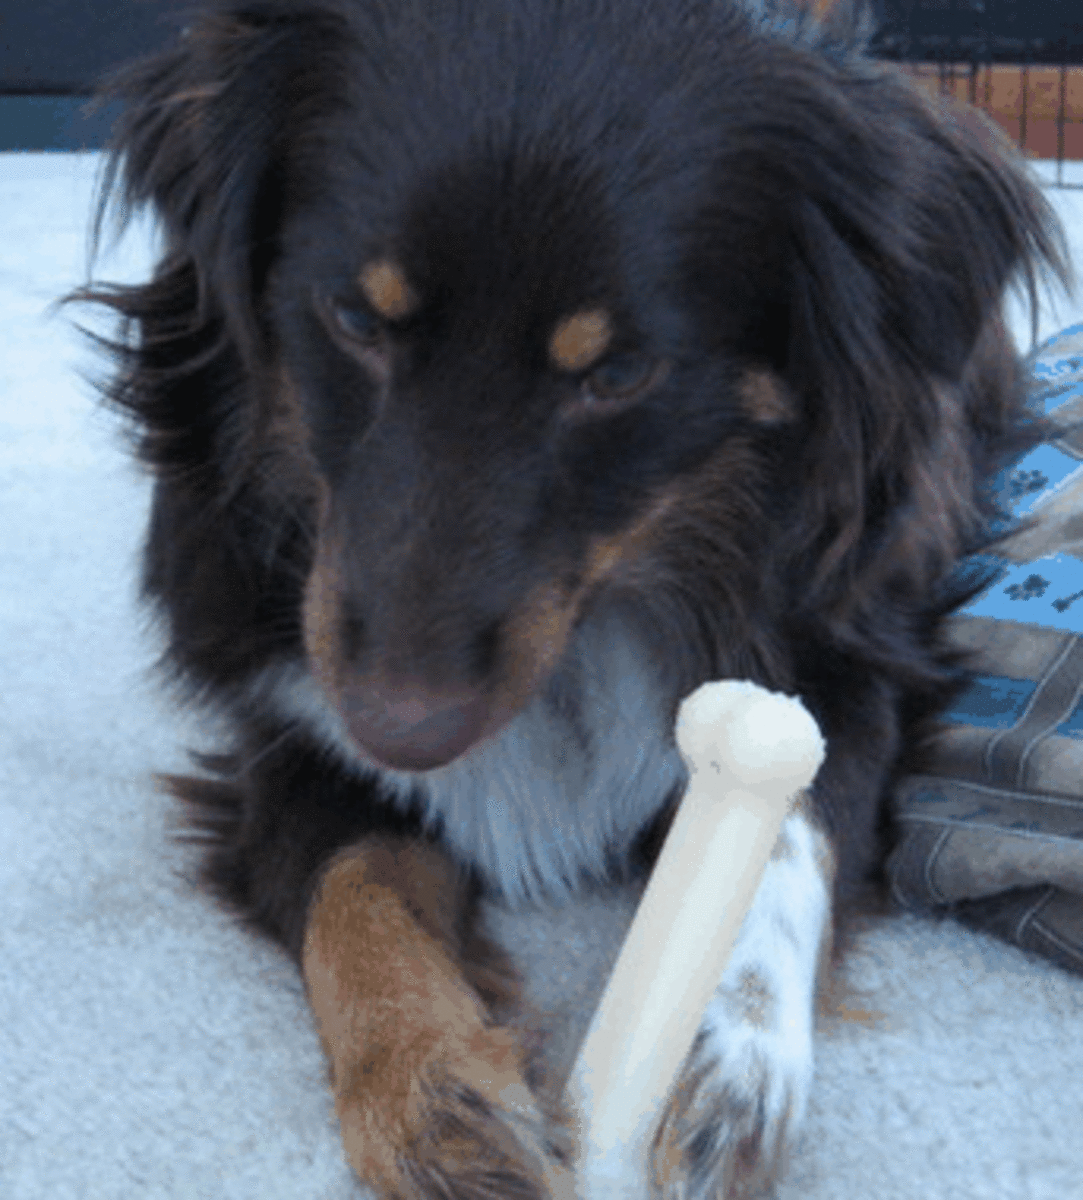 Dog guarding bone